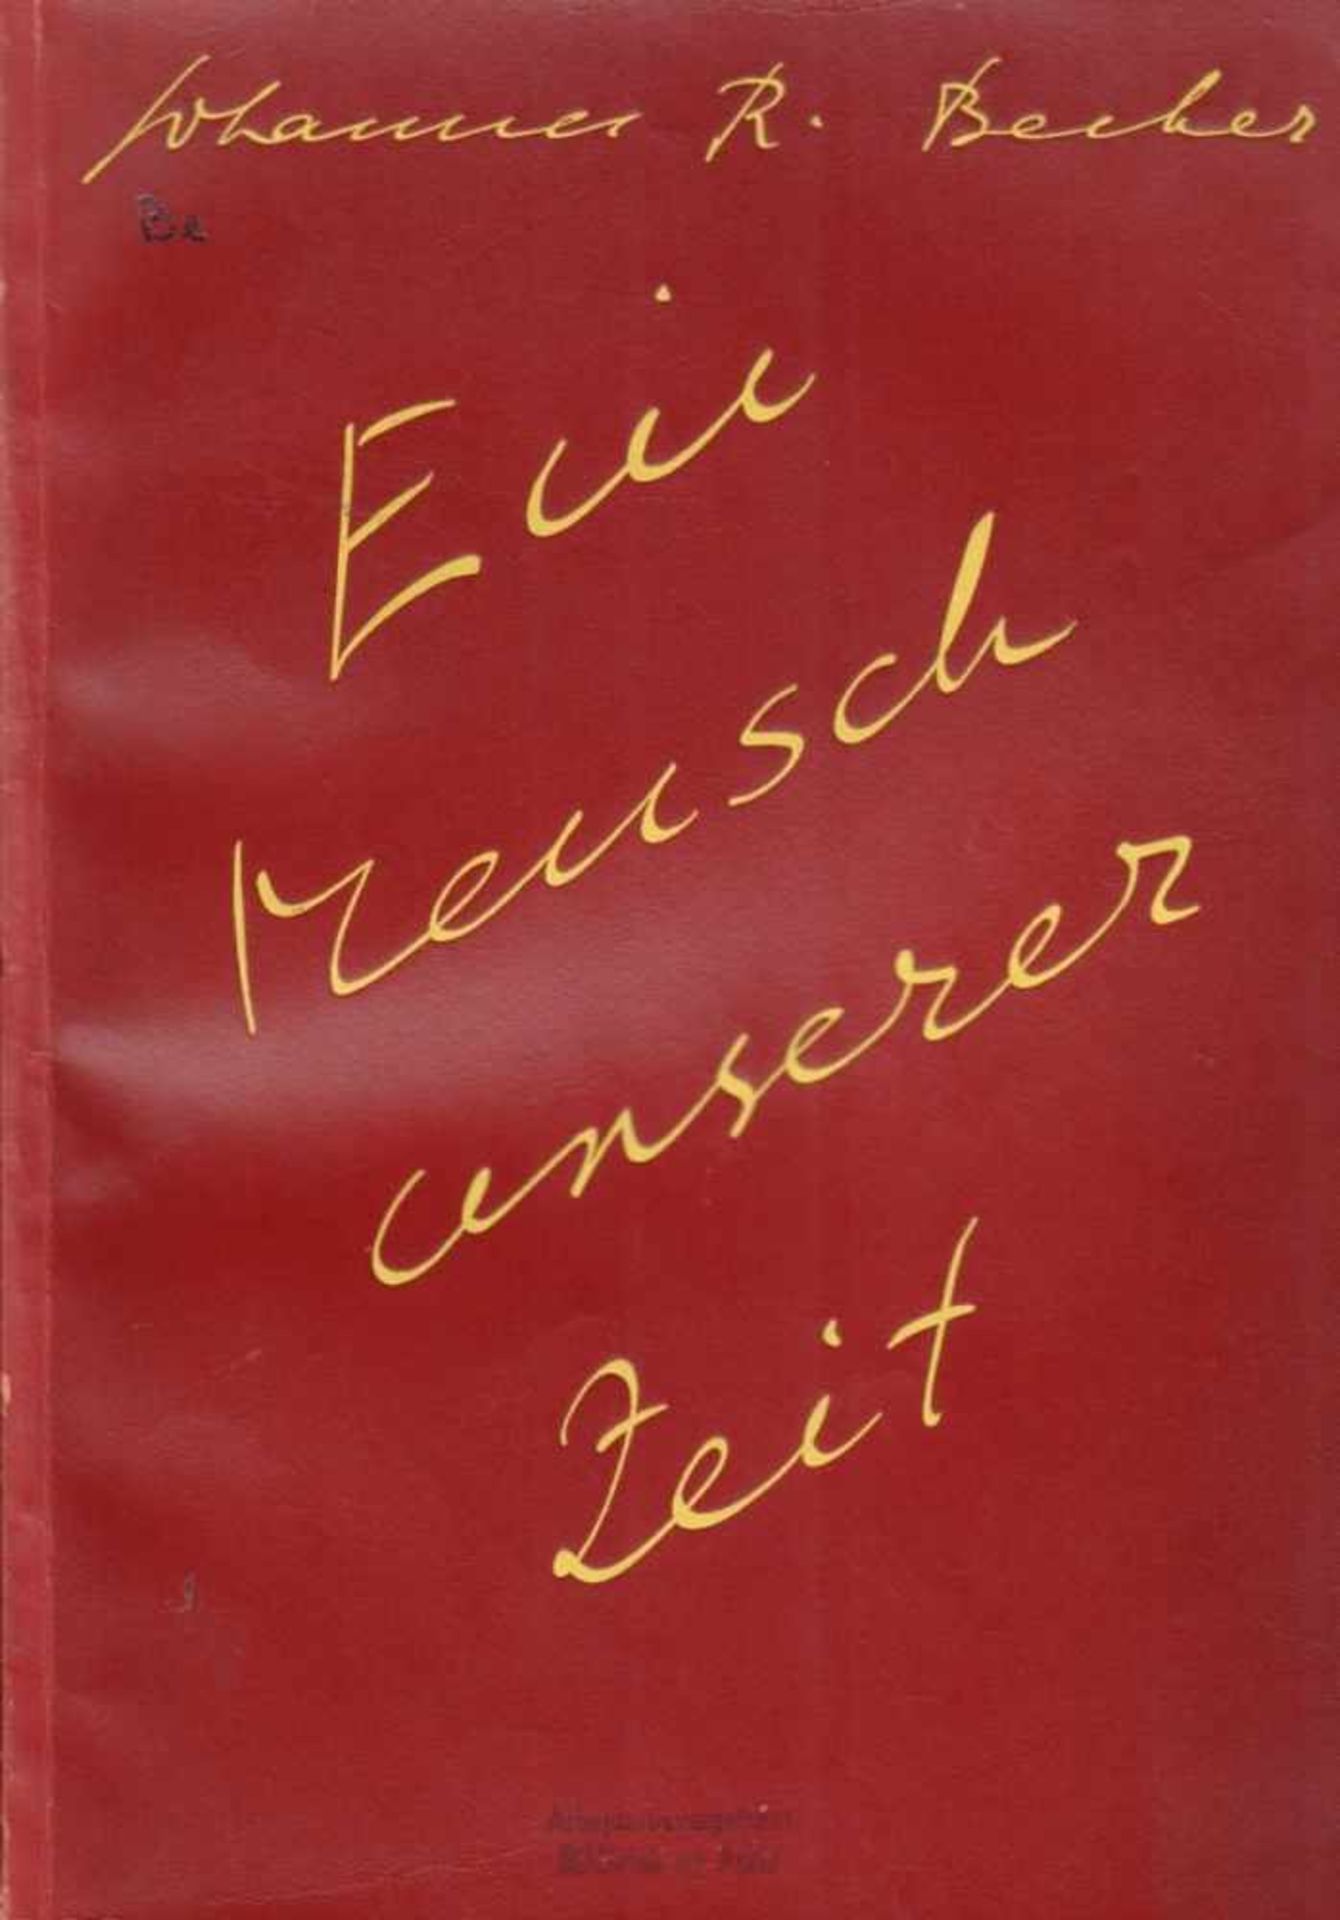 Johannes R. Becher - 3 Bände. 1. Ein Mensch unserer Zeit. Verse und Prosa Berlin, Malik 1930. Gr.-